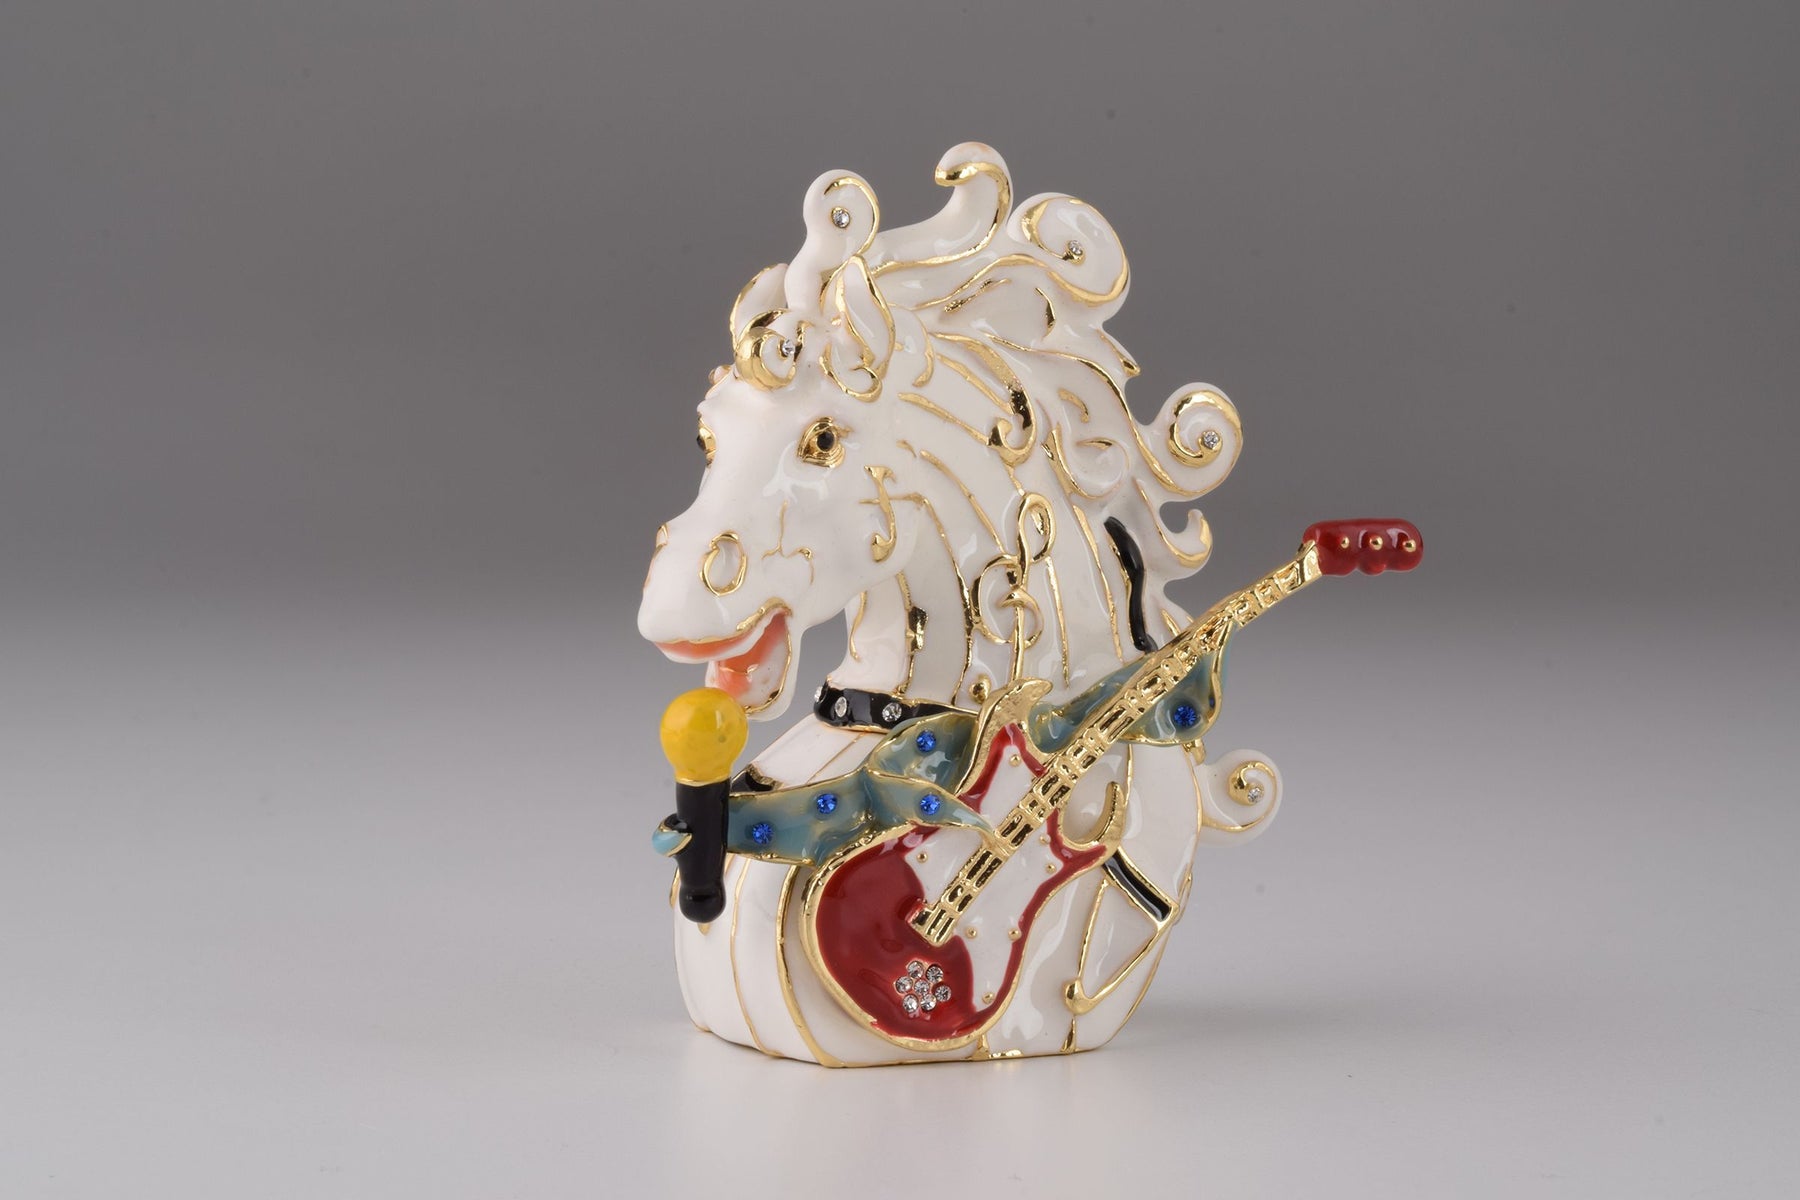 Keren Kopal Horse Head with a Guitar  86.50